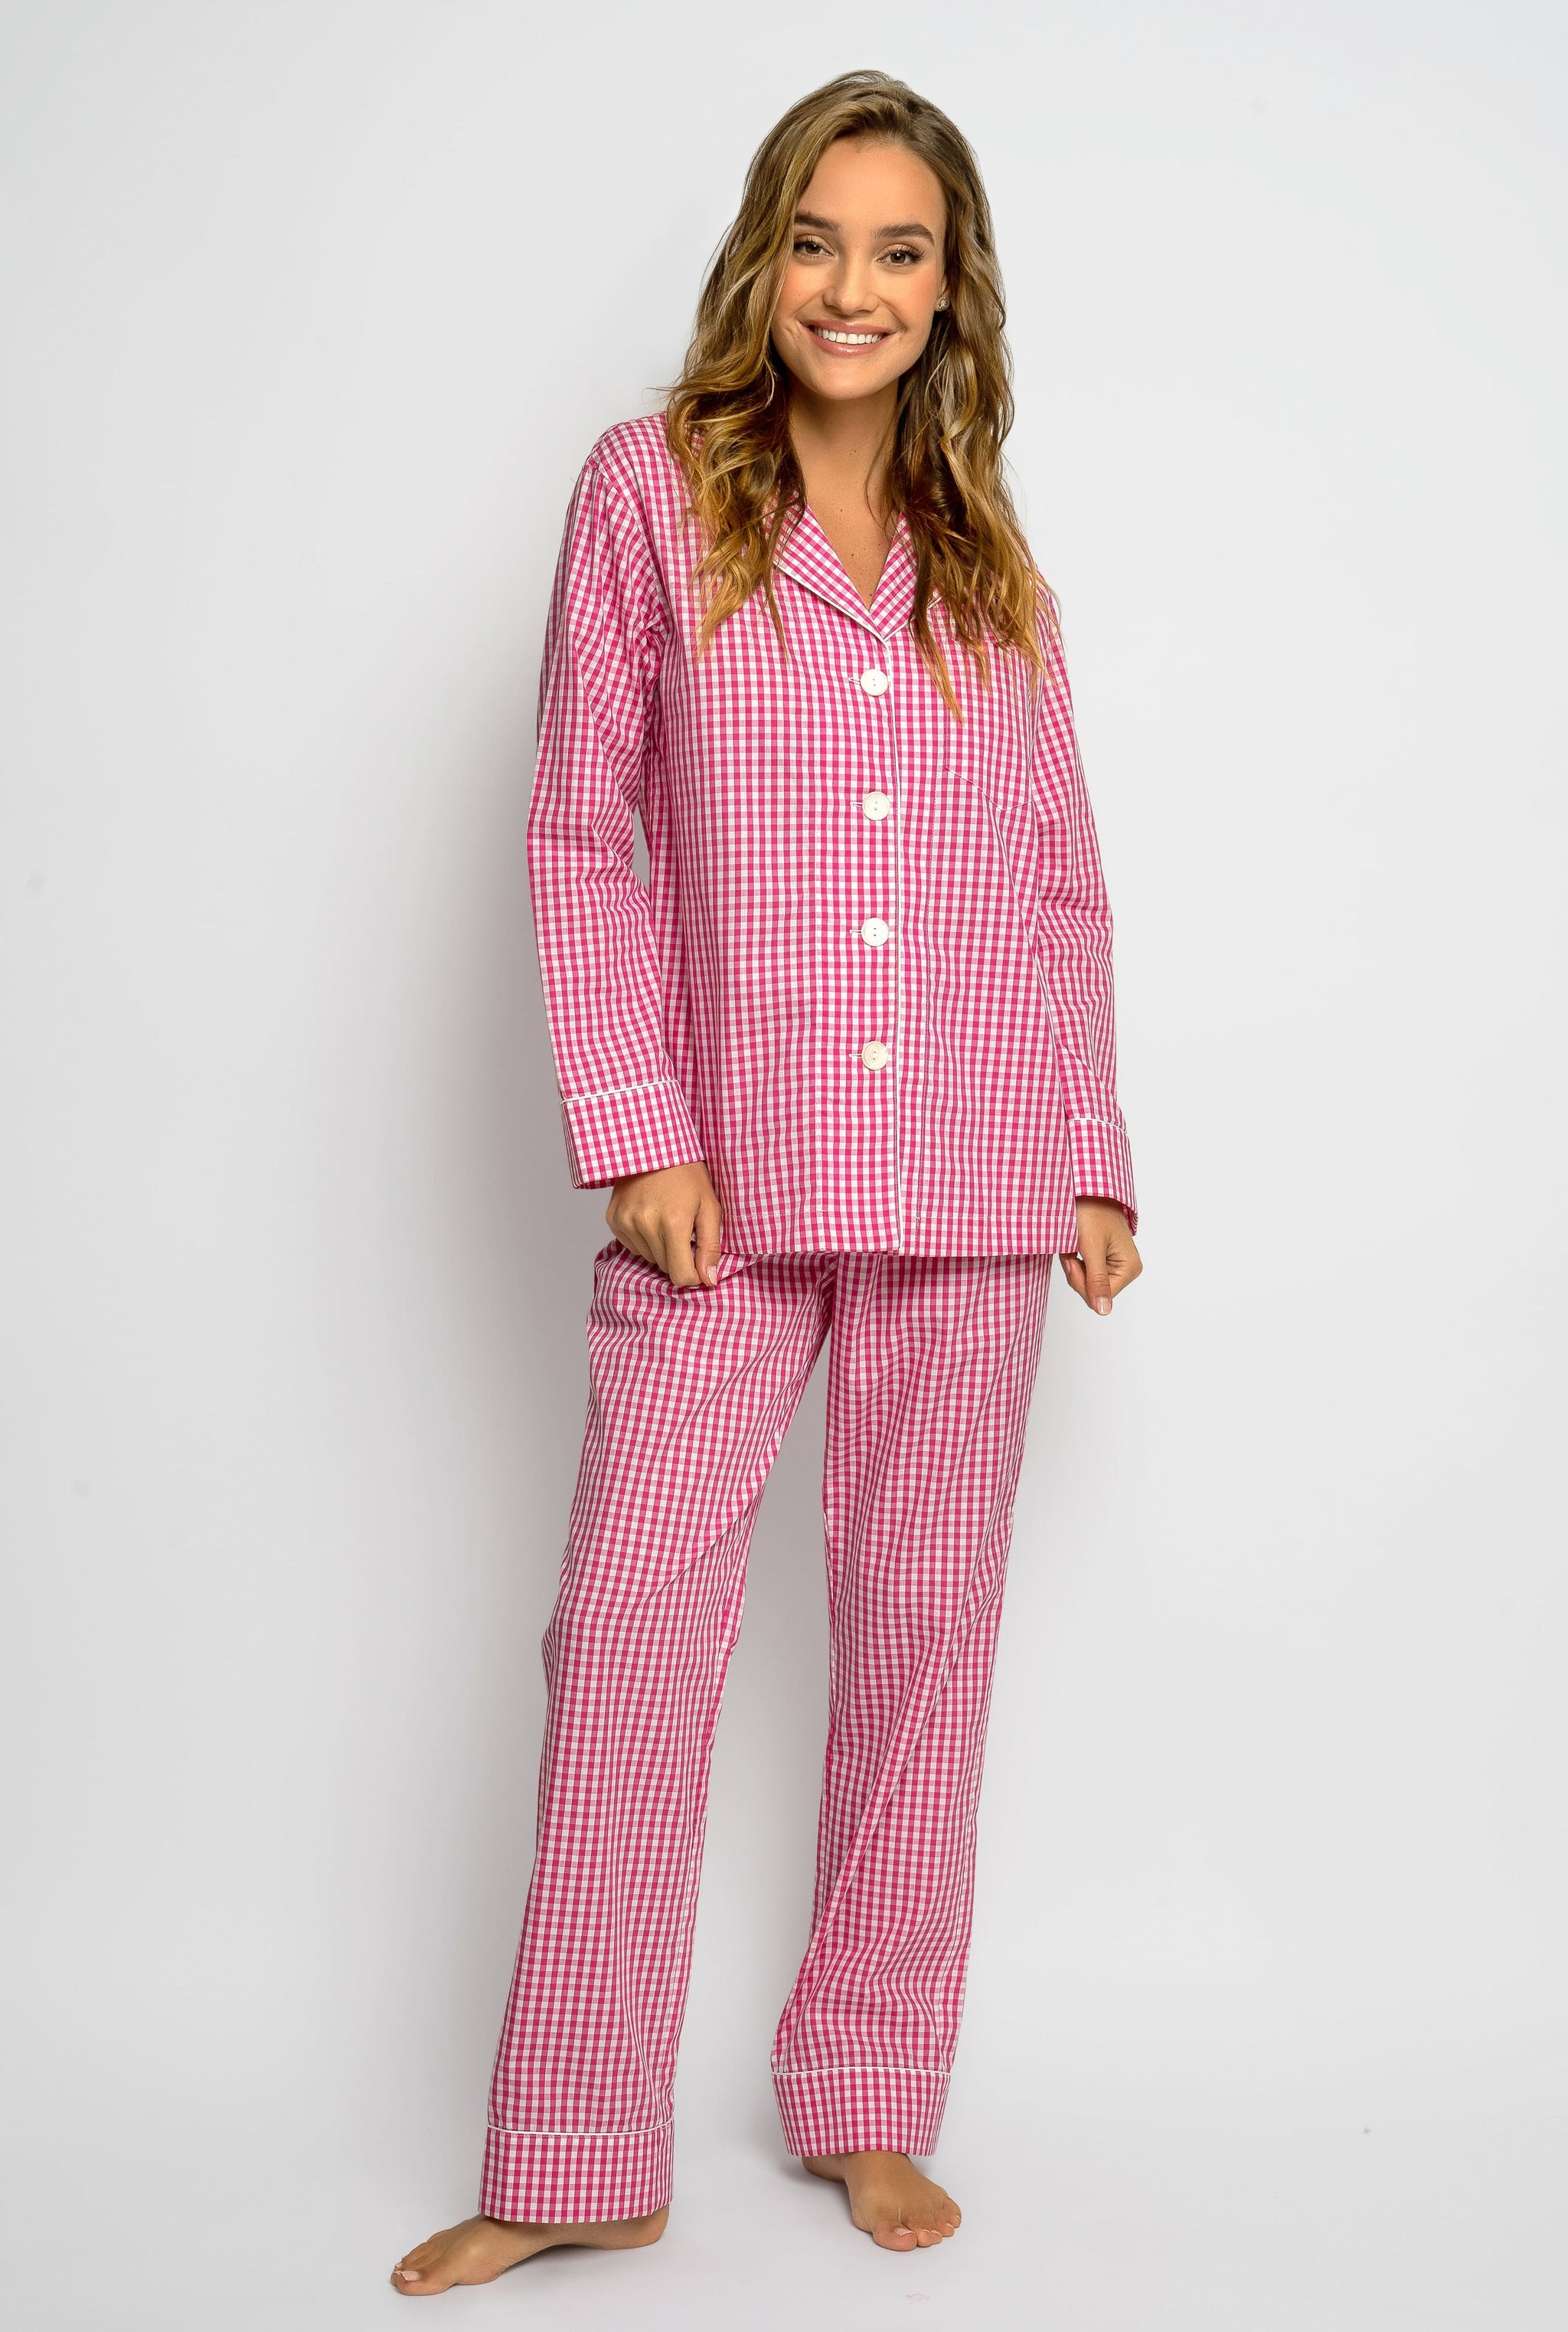 HEARTNICE Womens Pajama Set, Soft Long Sleeve Pajamas & Long Pants with  Pockets, Warm Button-up Sleepwear Lounge Pjs